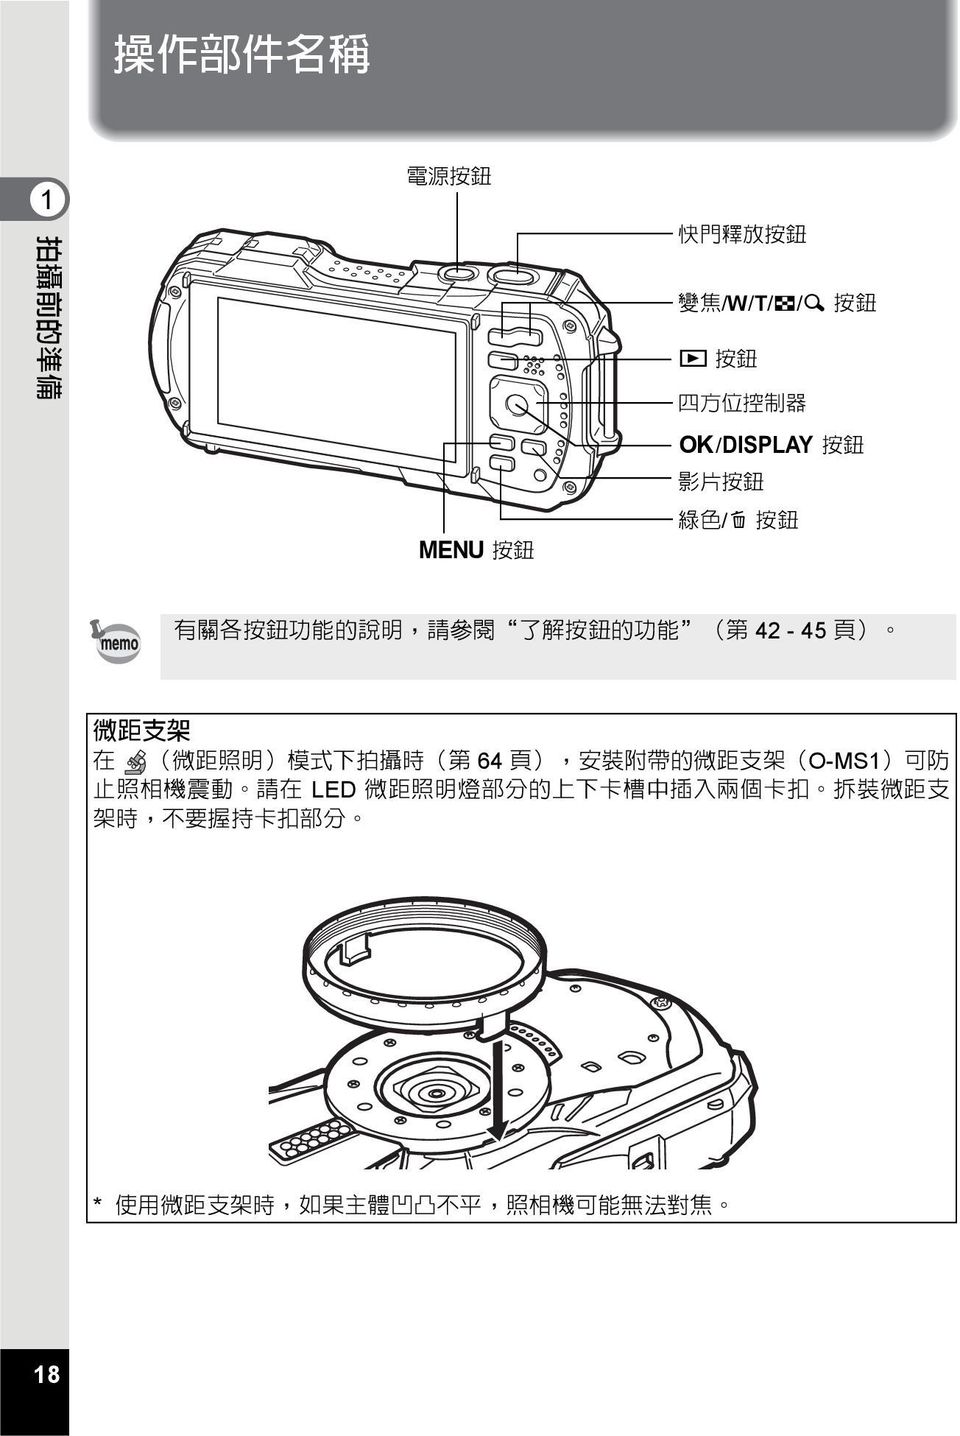 式 下 拍 攝 時 ( 第 64 頁 ), 安 裝 附 帶 的 微 距 支 架 (O-MS1) 可 防 止 照 相 機 震 動 請 在 LED 微 距 照 明 燈 部 分 的 上 下 卡 槽